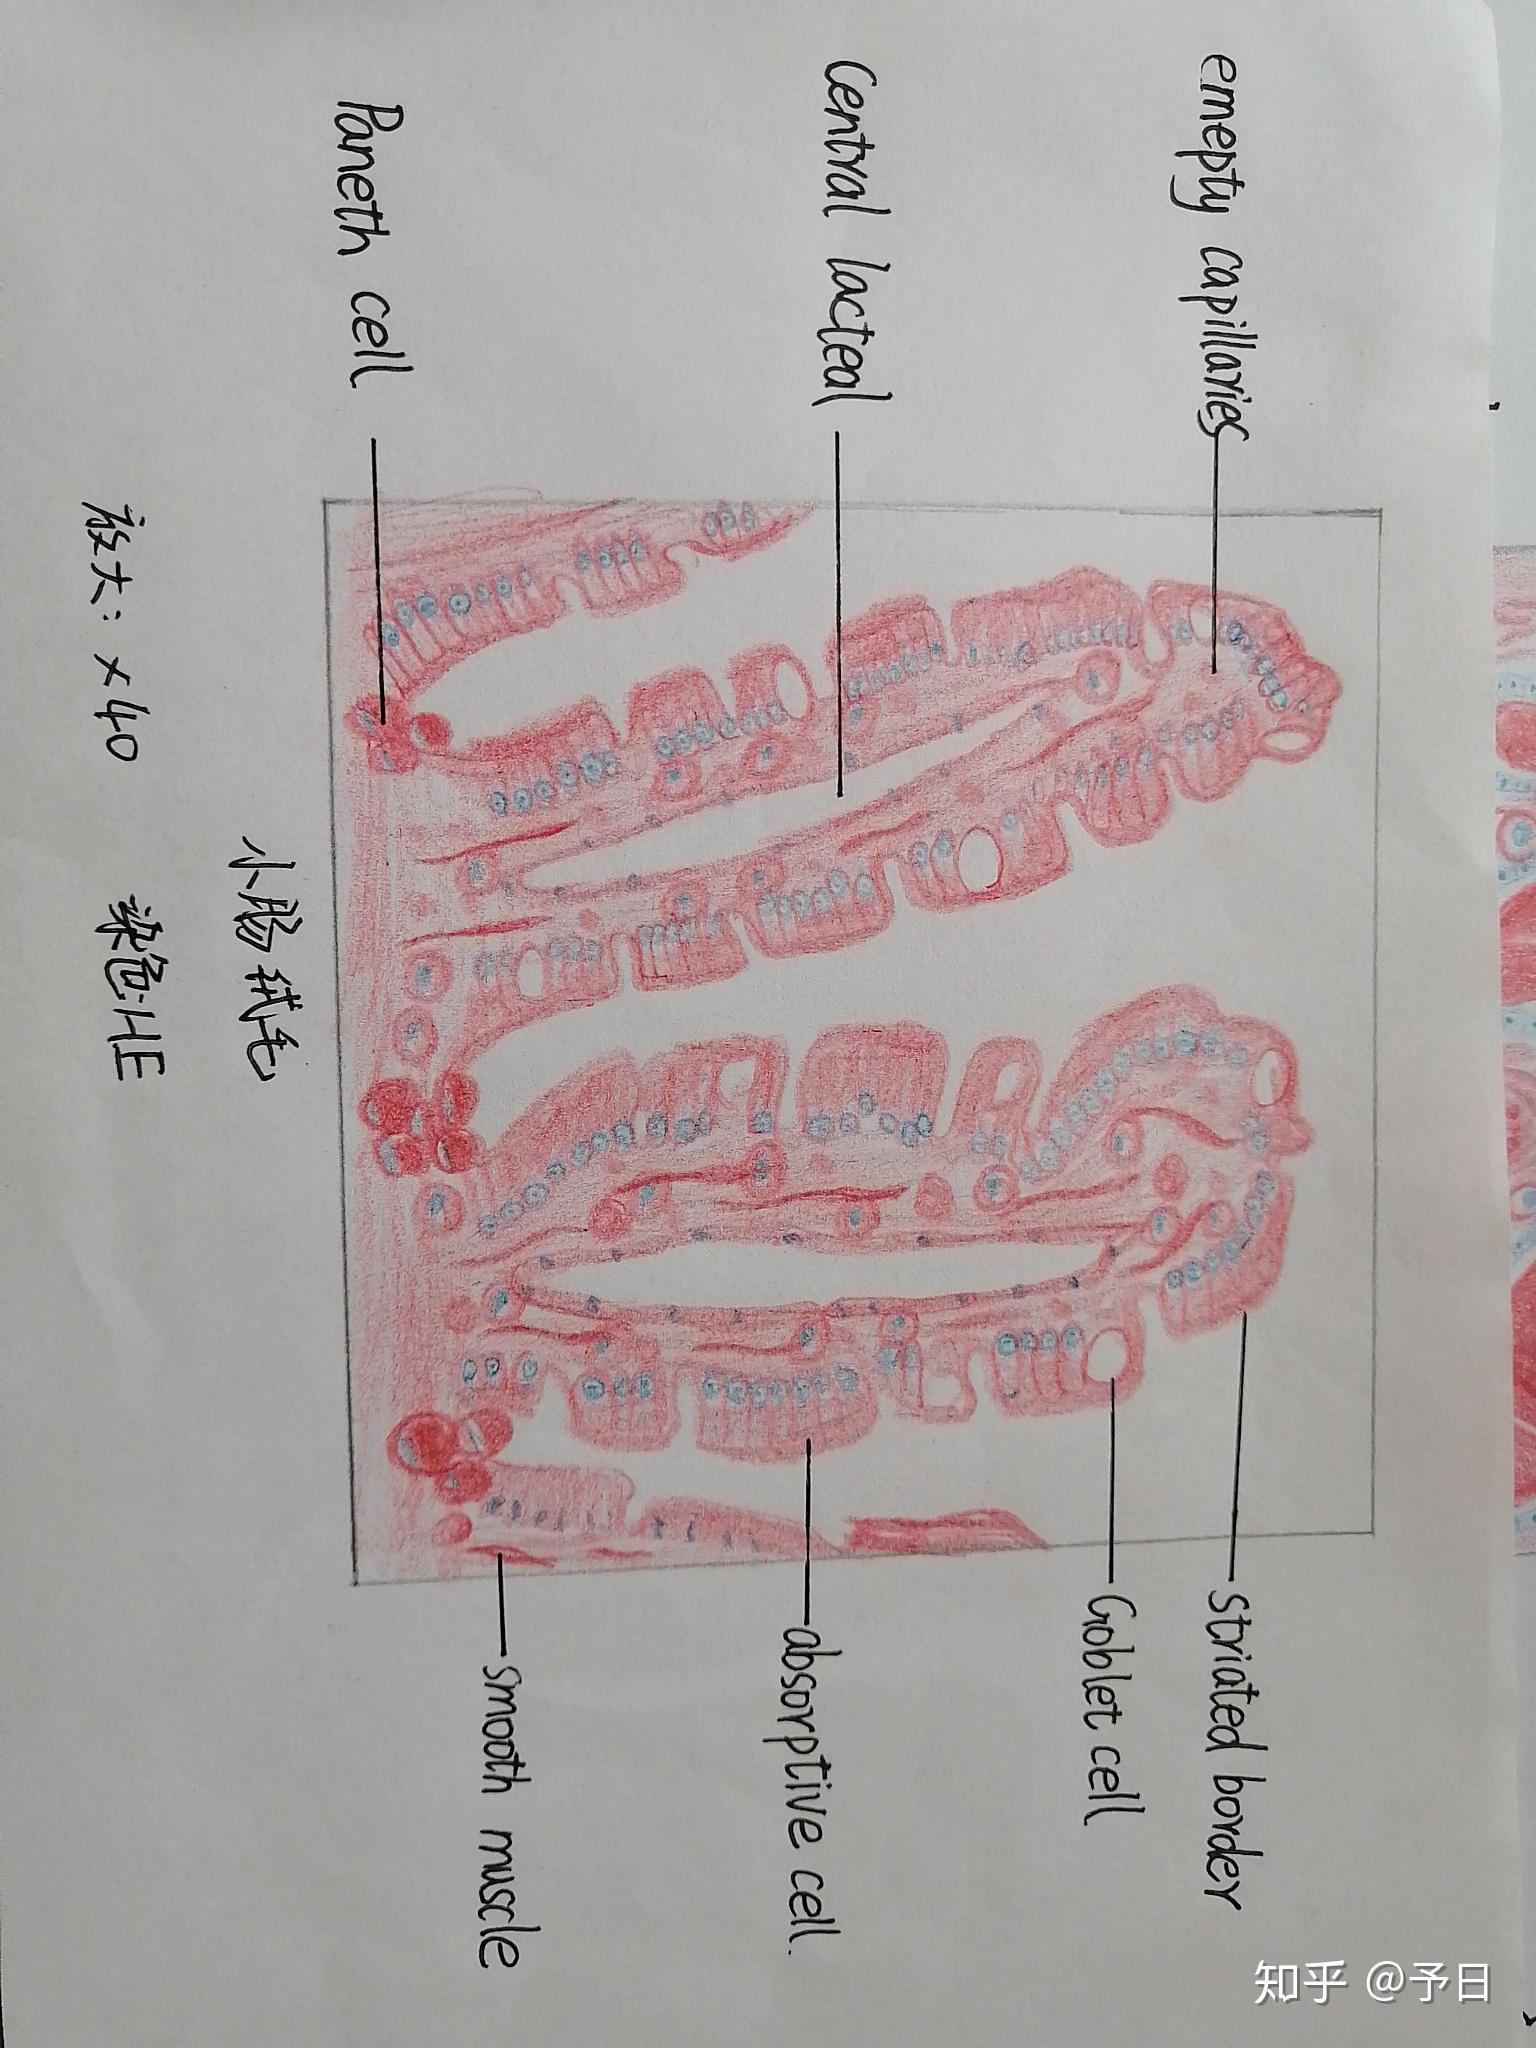 小肠结构图横切面图片